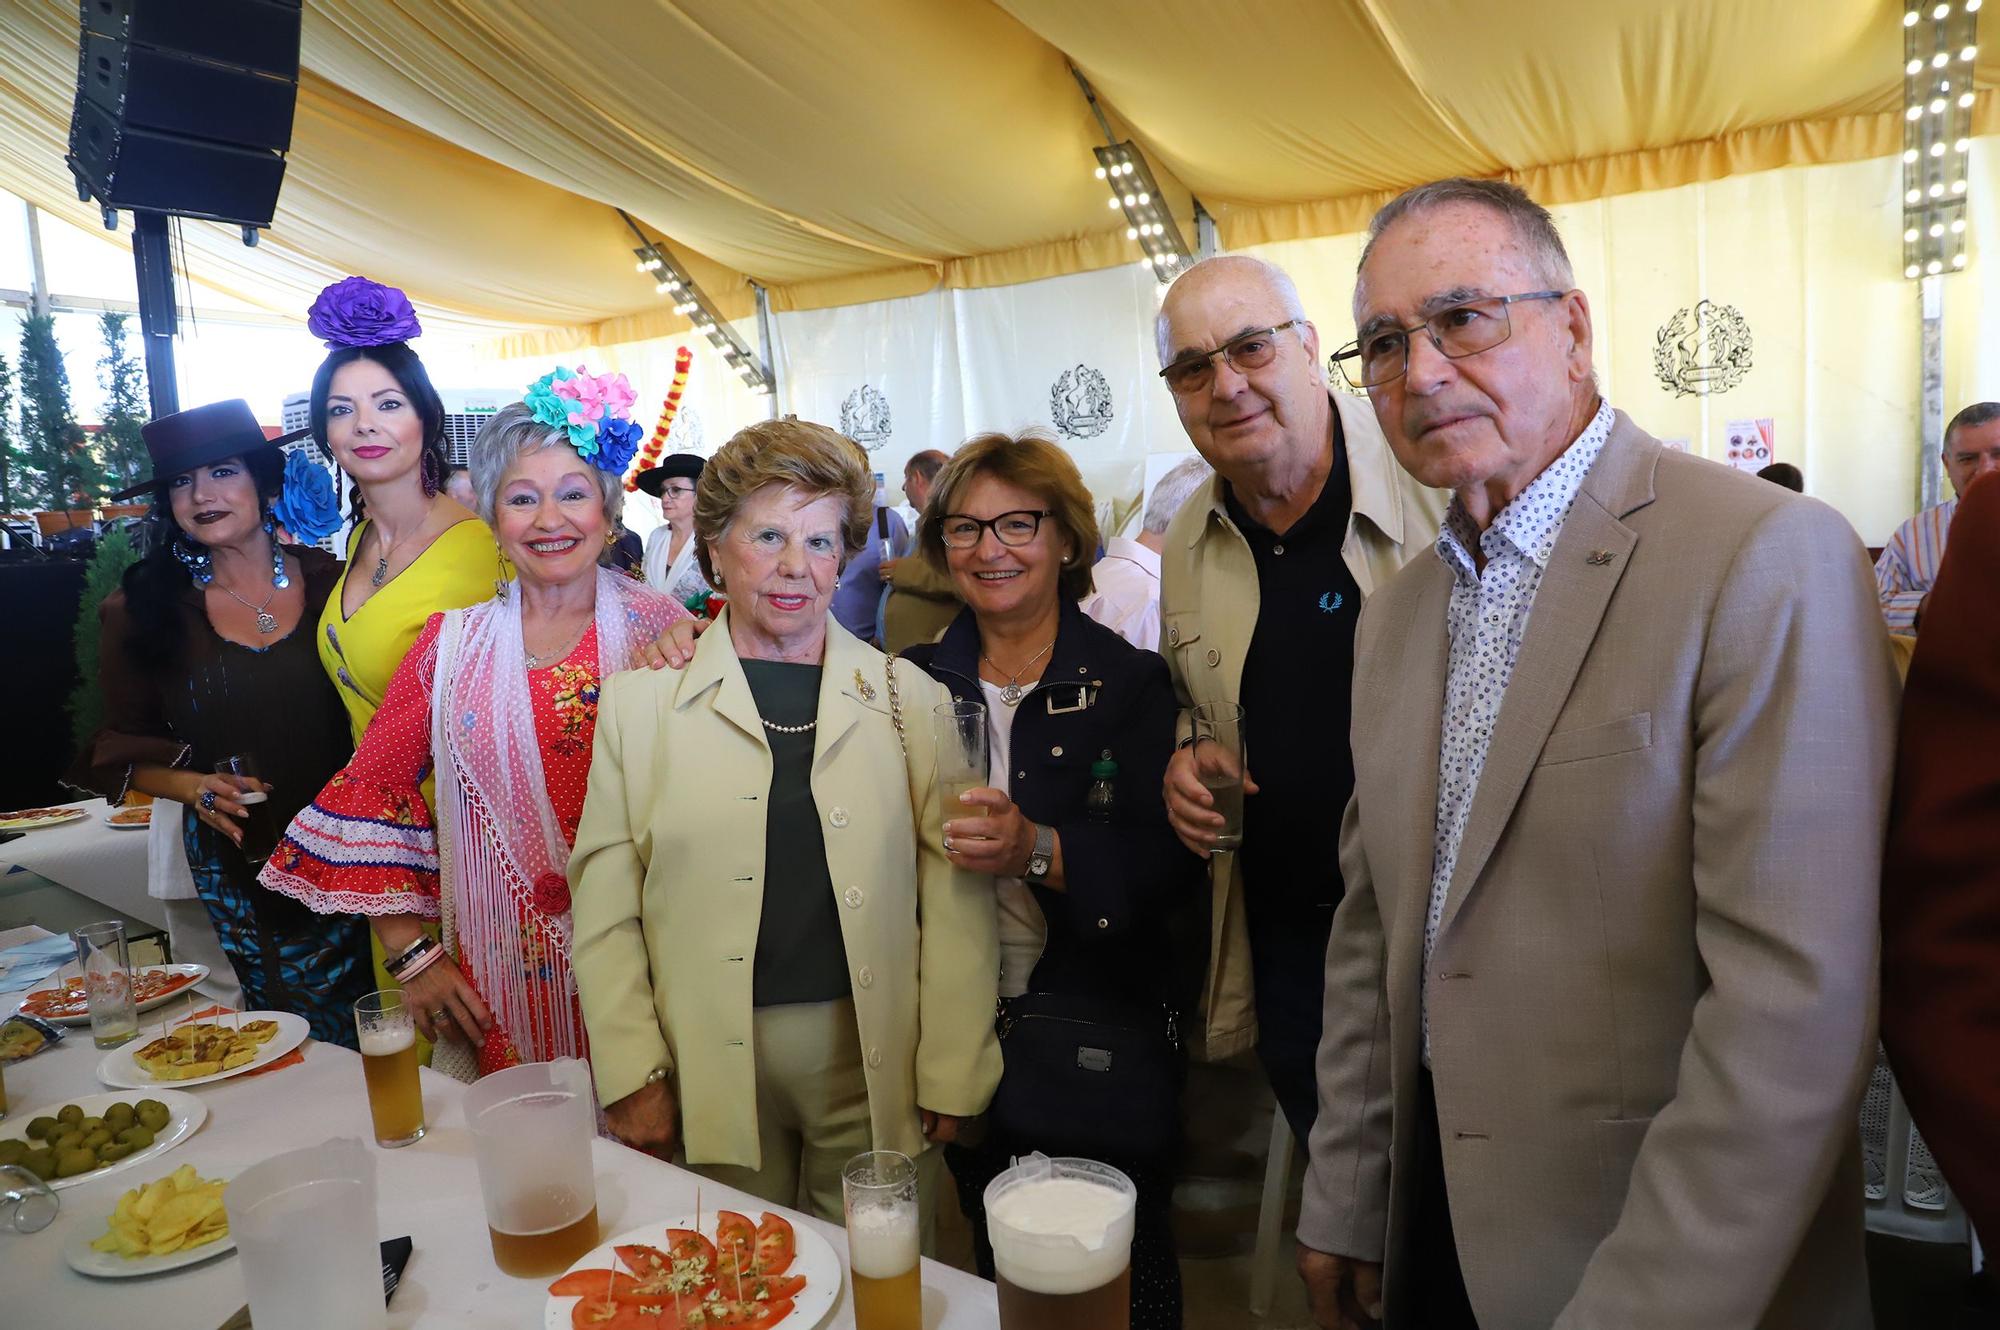 La recepción de la Federación de Peñas Cordobesas en la Feria de Córdoba en imágenes